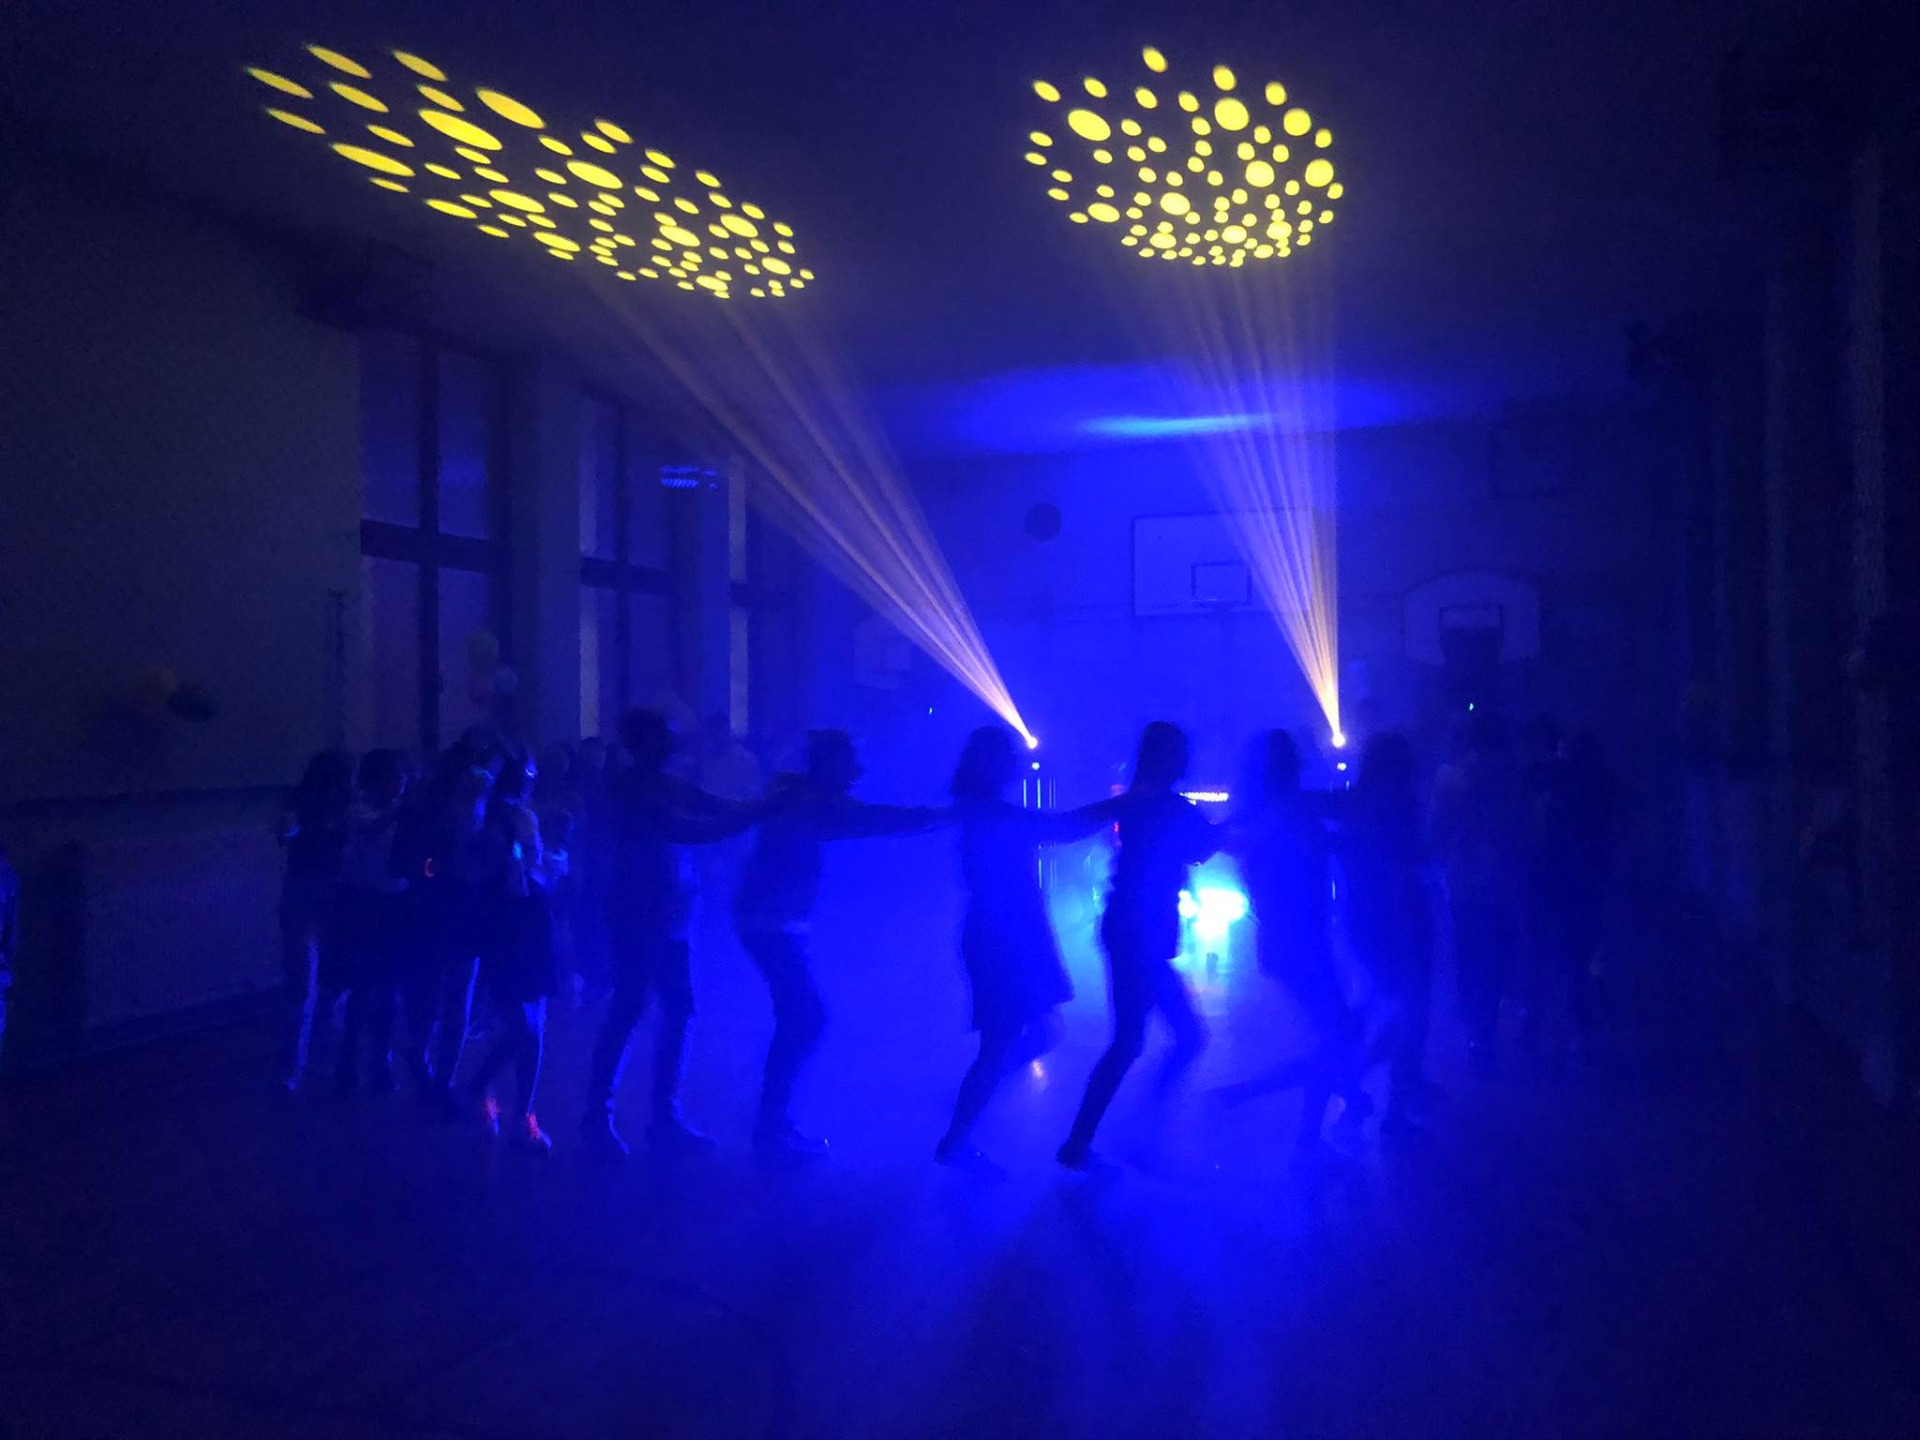 Uczniowie tańczący w sali gimnastycznej do muzyki puszczanej przez DJ